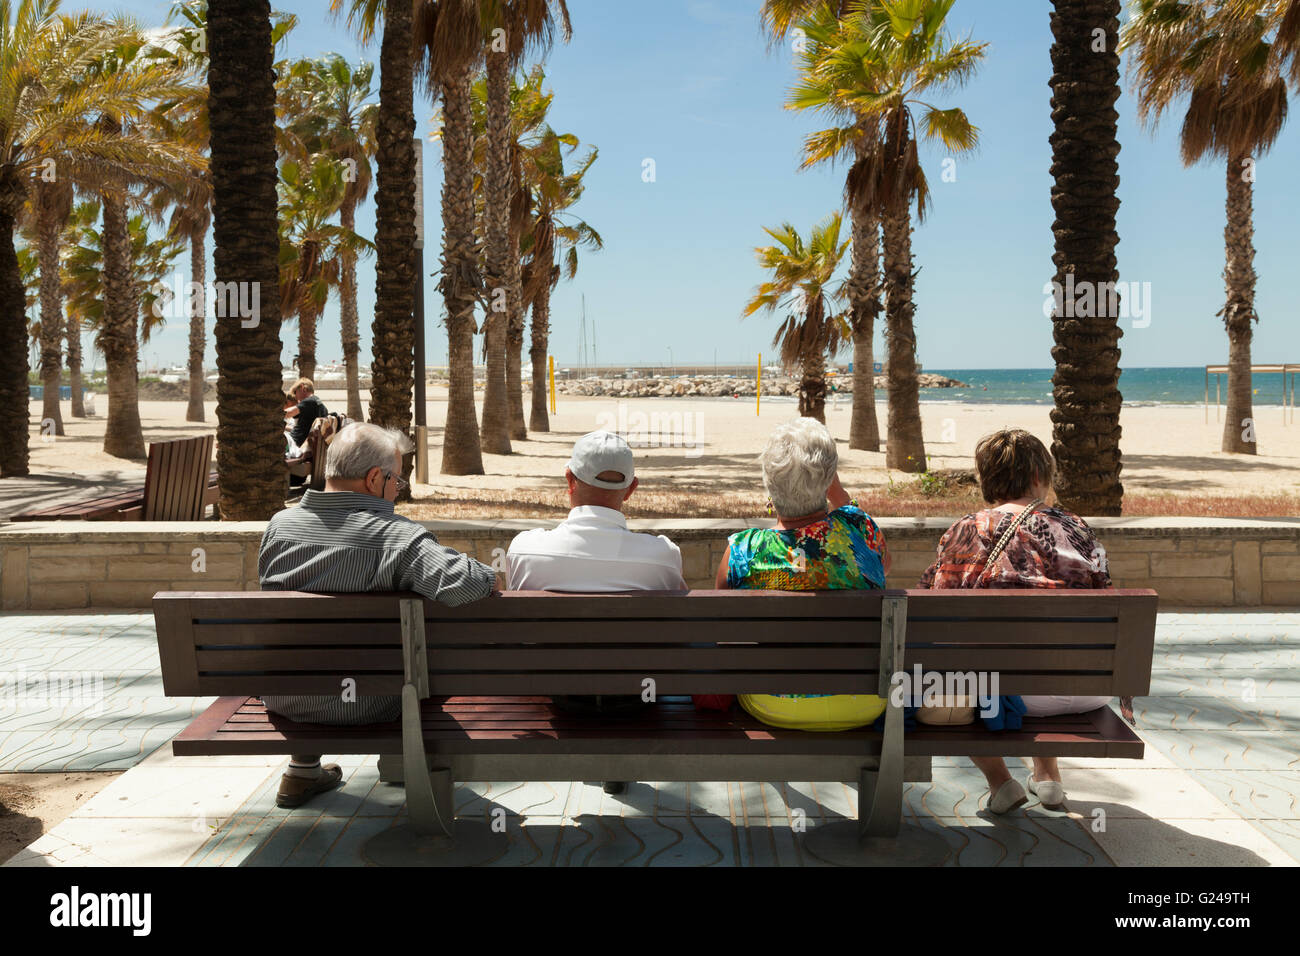 Vue arrière de l'appui sur les touristes à la recherche de banquette à palmier plage couverte, Salou, Catalogne, Espagne Banque D'Images